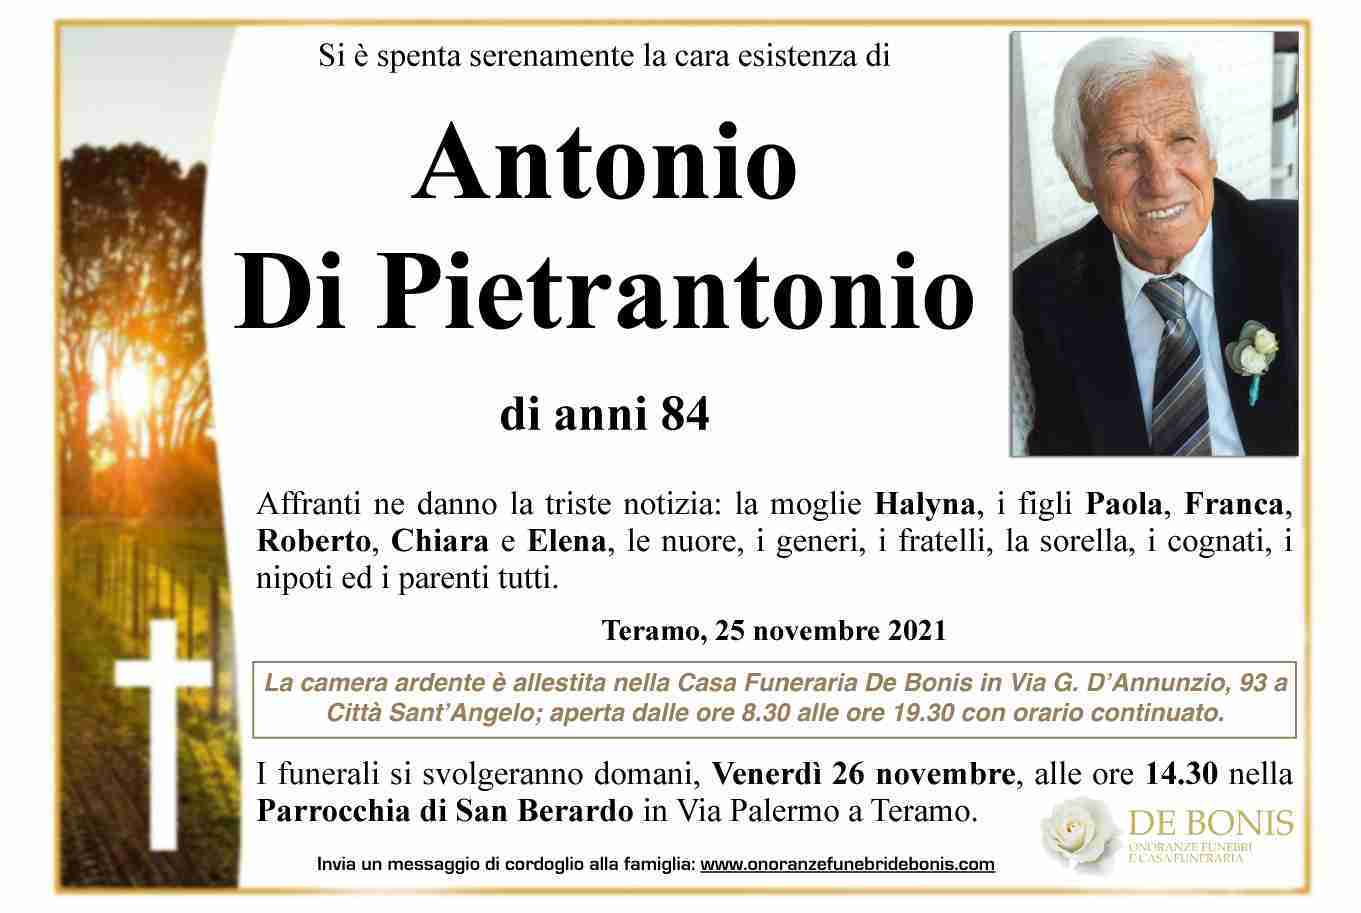 Antonio Di Pietrantonio